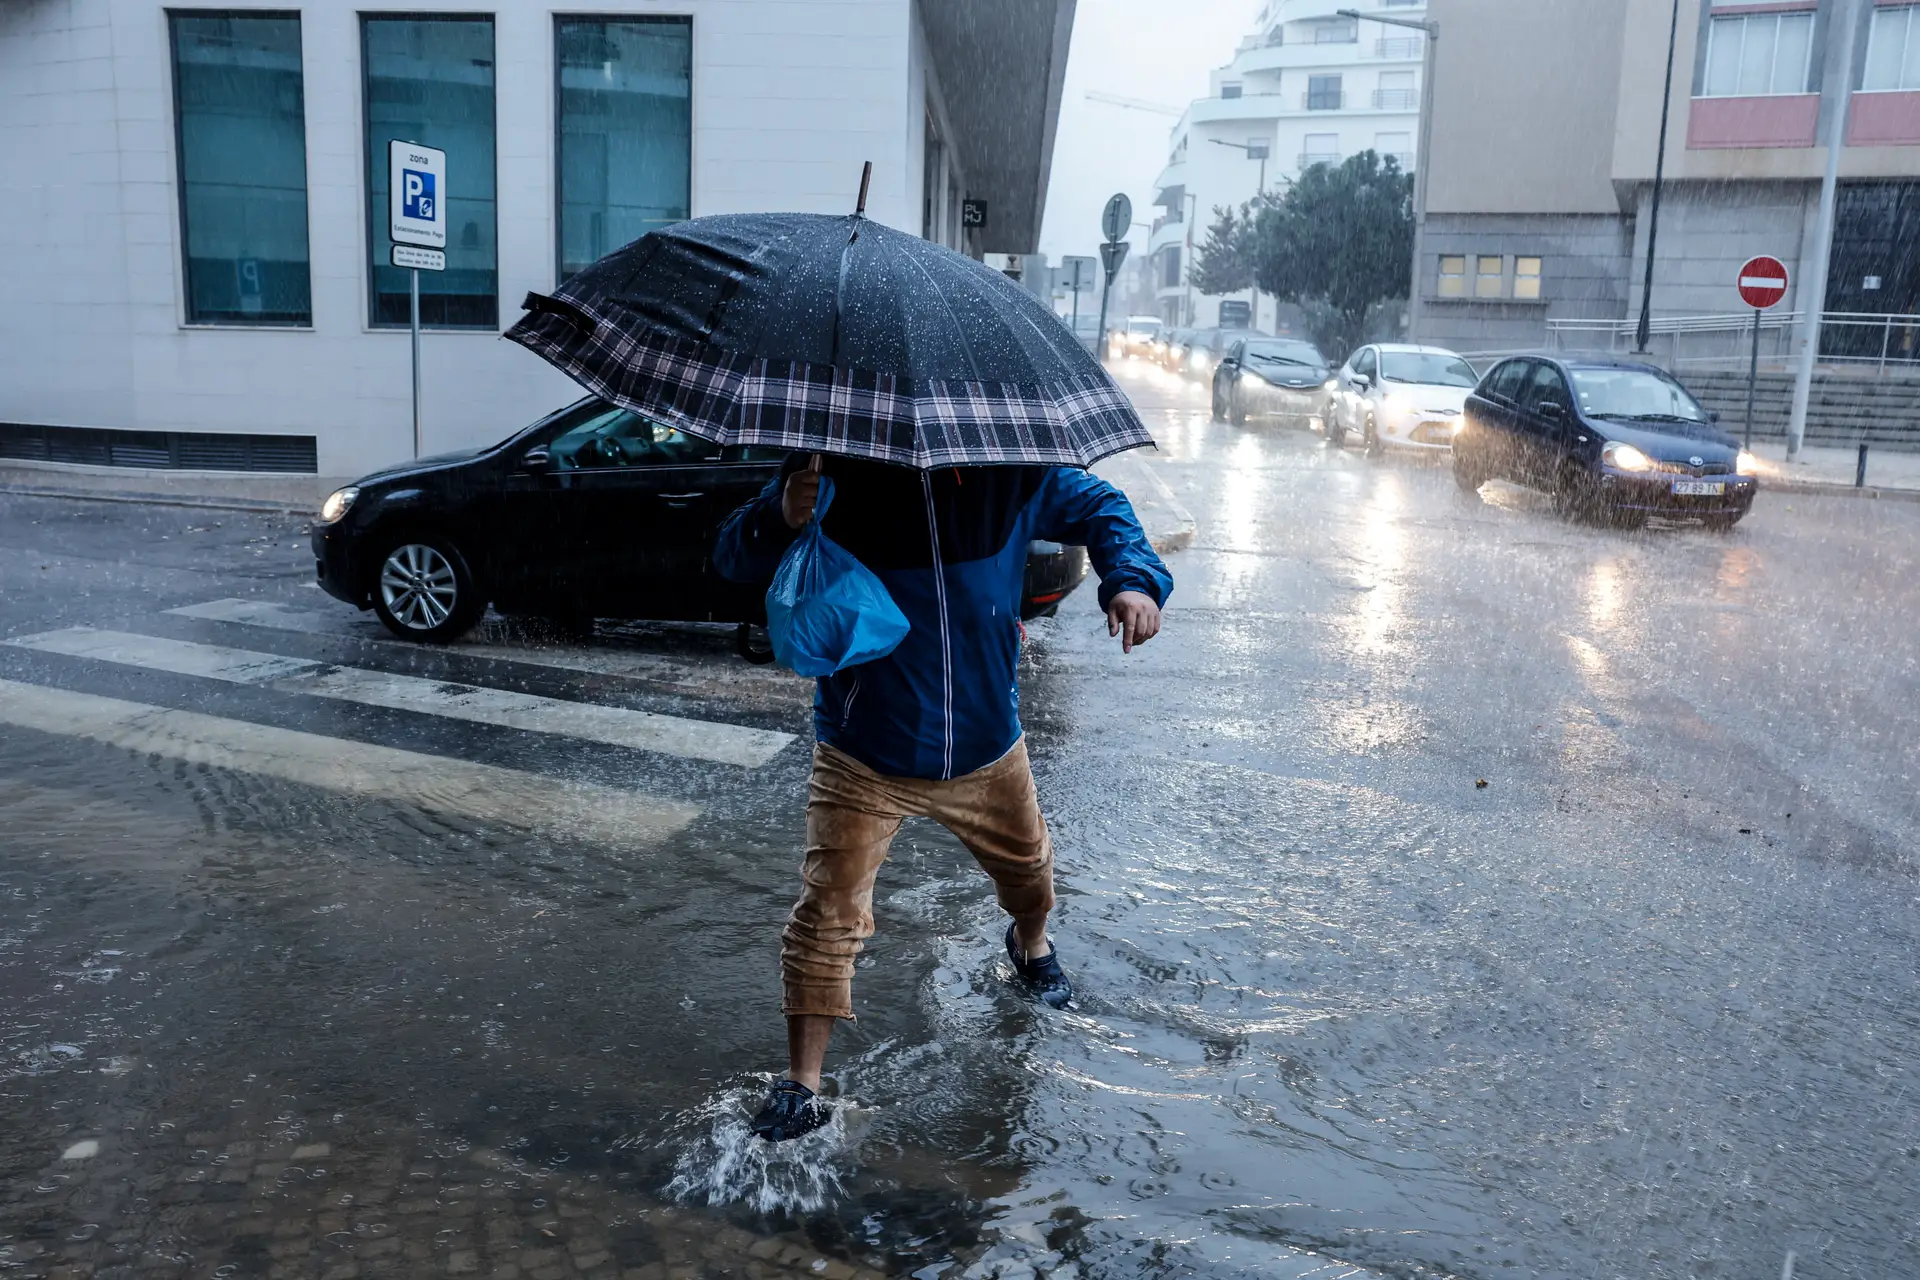 Mau tempo: Portugal deve estar preparado para mais e piores fenómenos extremos